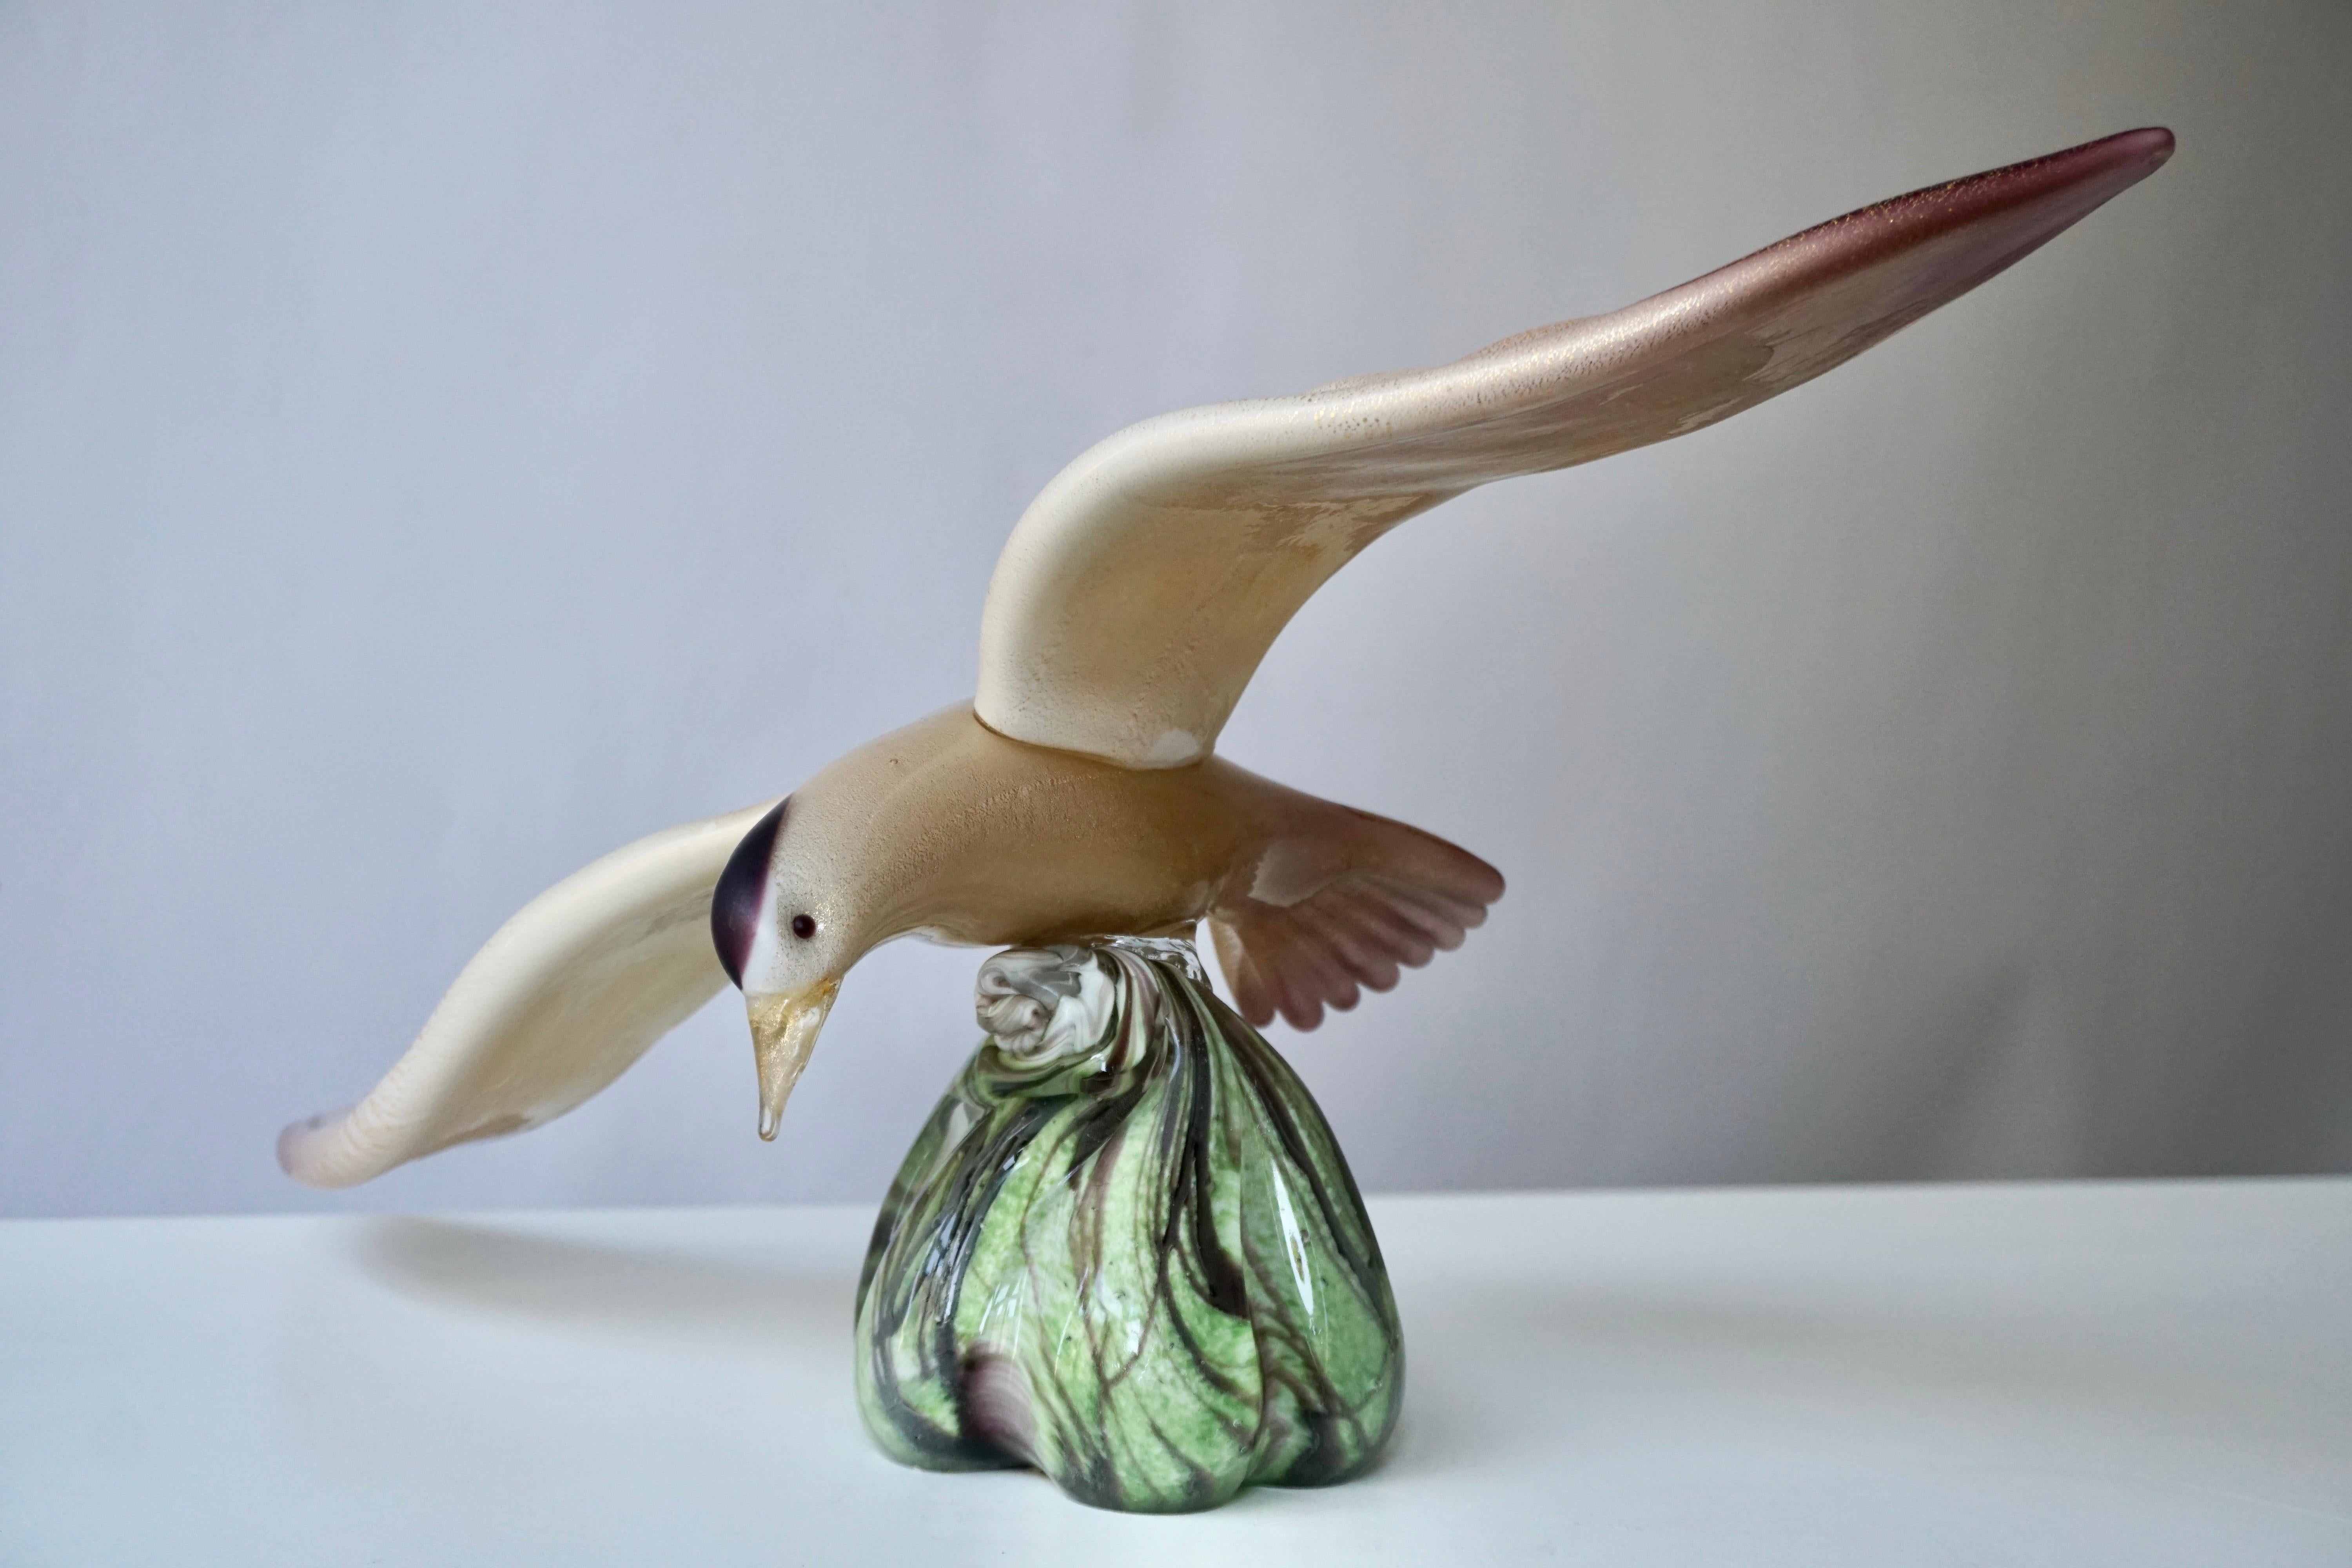 Diese ausdrucksstarke fliegende Vogelskulptur aus Glas aus den 1970er Jahren ist ein wahres Kunstwerk aus mundgeblasenem Muranoglas mit einem Dekor in Lila, Creme, Gold und Grün.

Maße: Breite 45 cm.
Gewicht 3 kg.